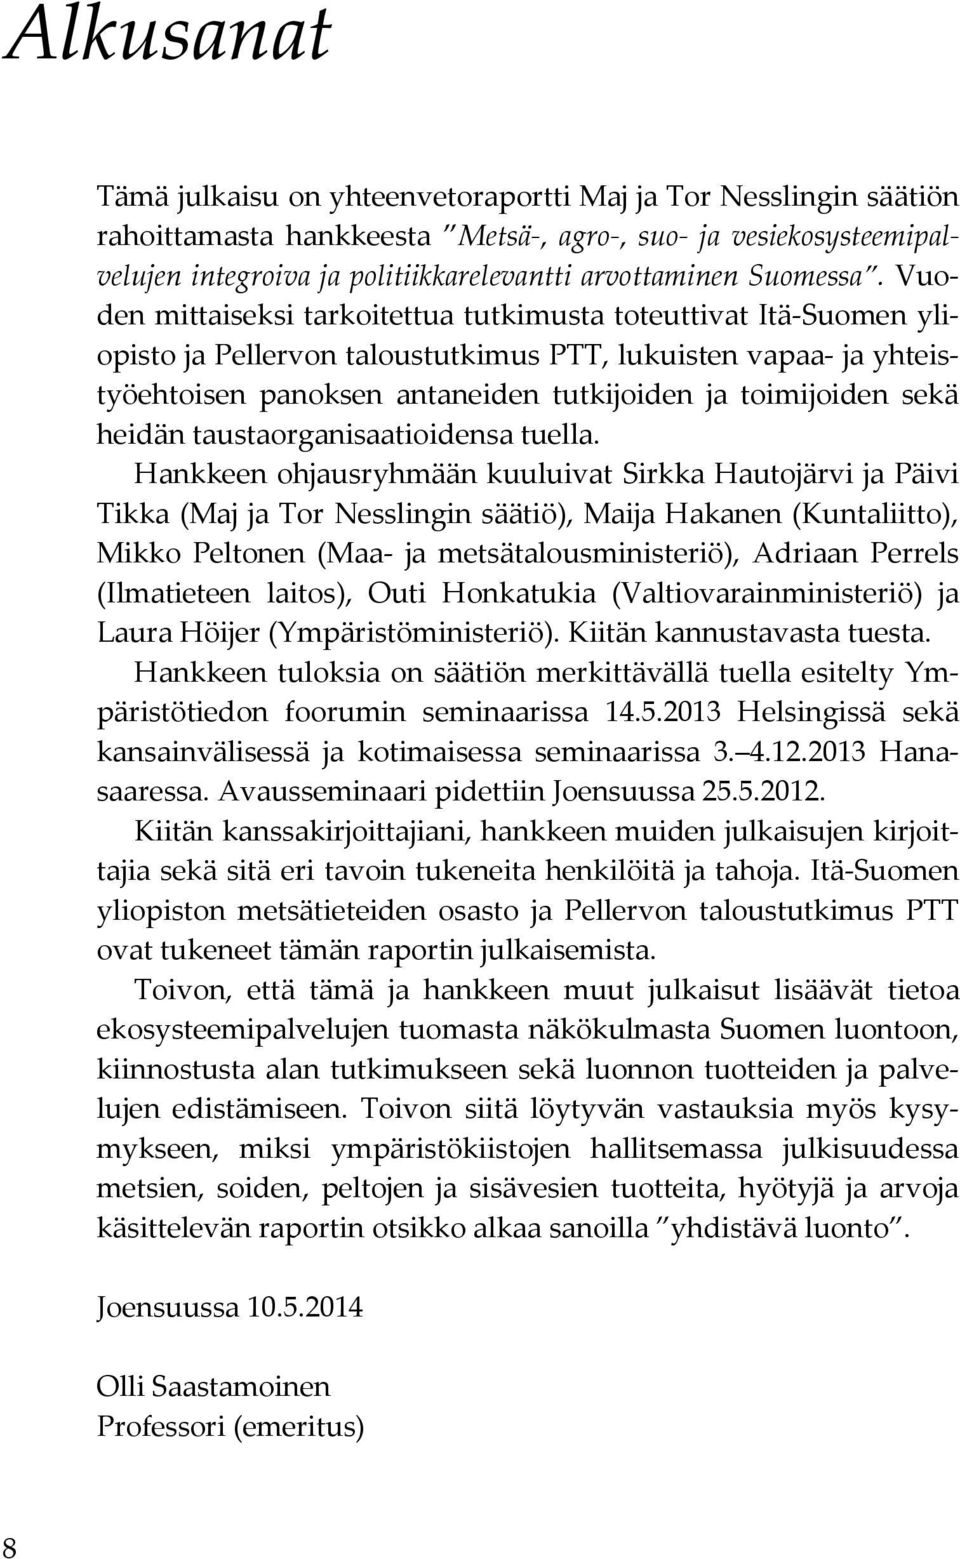 Vuoden mittaiseksi tarkoitettua tutkimusta toteuttivat Itä-Suomen yliopisto ja Pellervon taloustutkimus PTT, lukuisten vapaa- ja yhteistyöehtoisen panoksen antaneiden tutkijoiden ja toimijoiden sekä